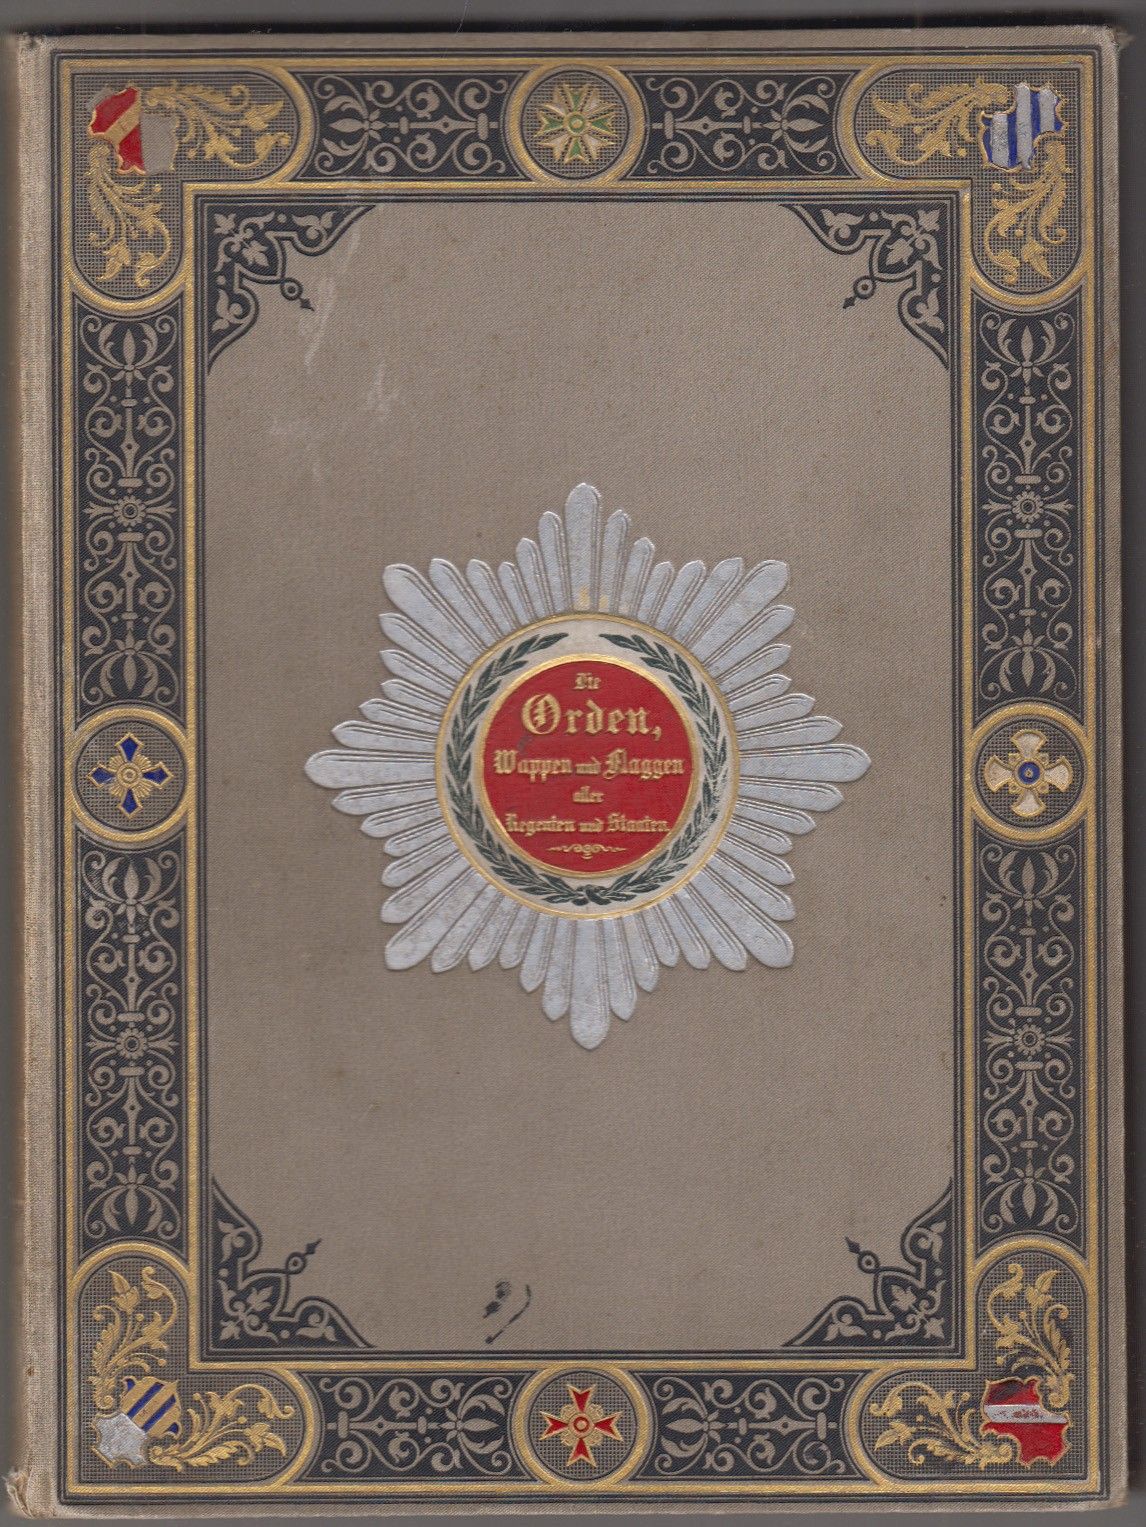  Die Orden, Wappen und Flaggen aller Regenten und Staaten in originalgetreuen Abbildungen.